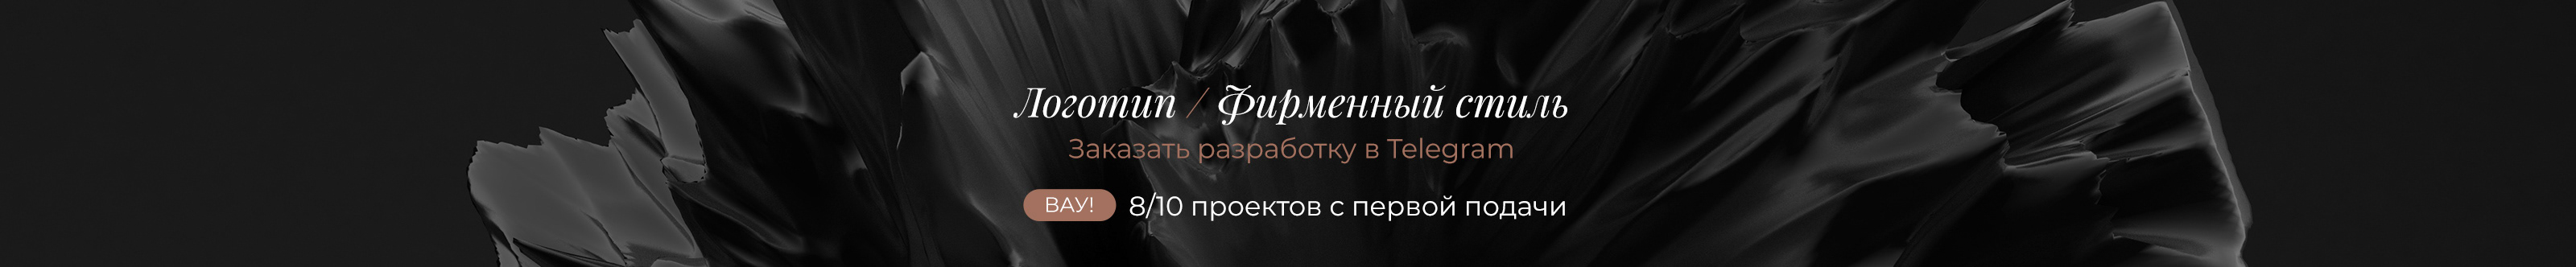 Ксения Евстигнеева's profile banner